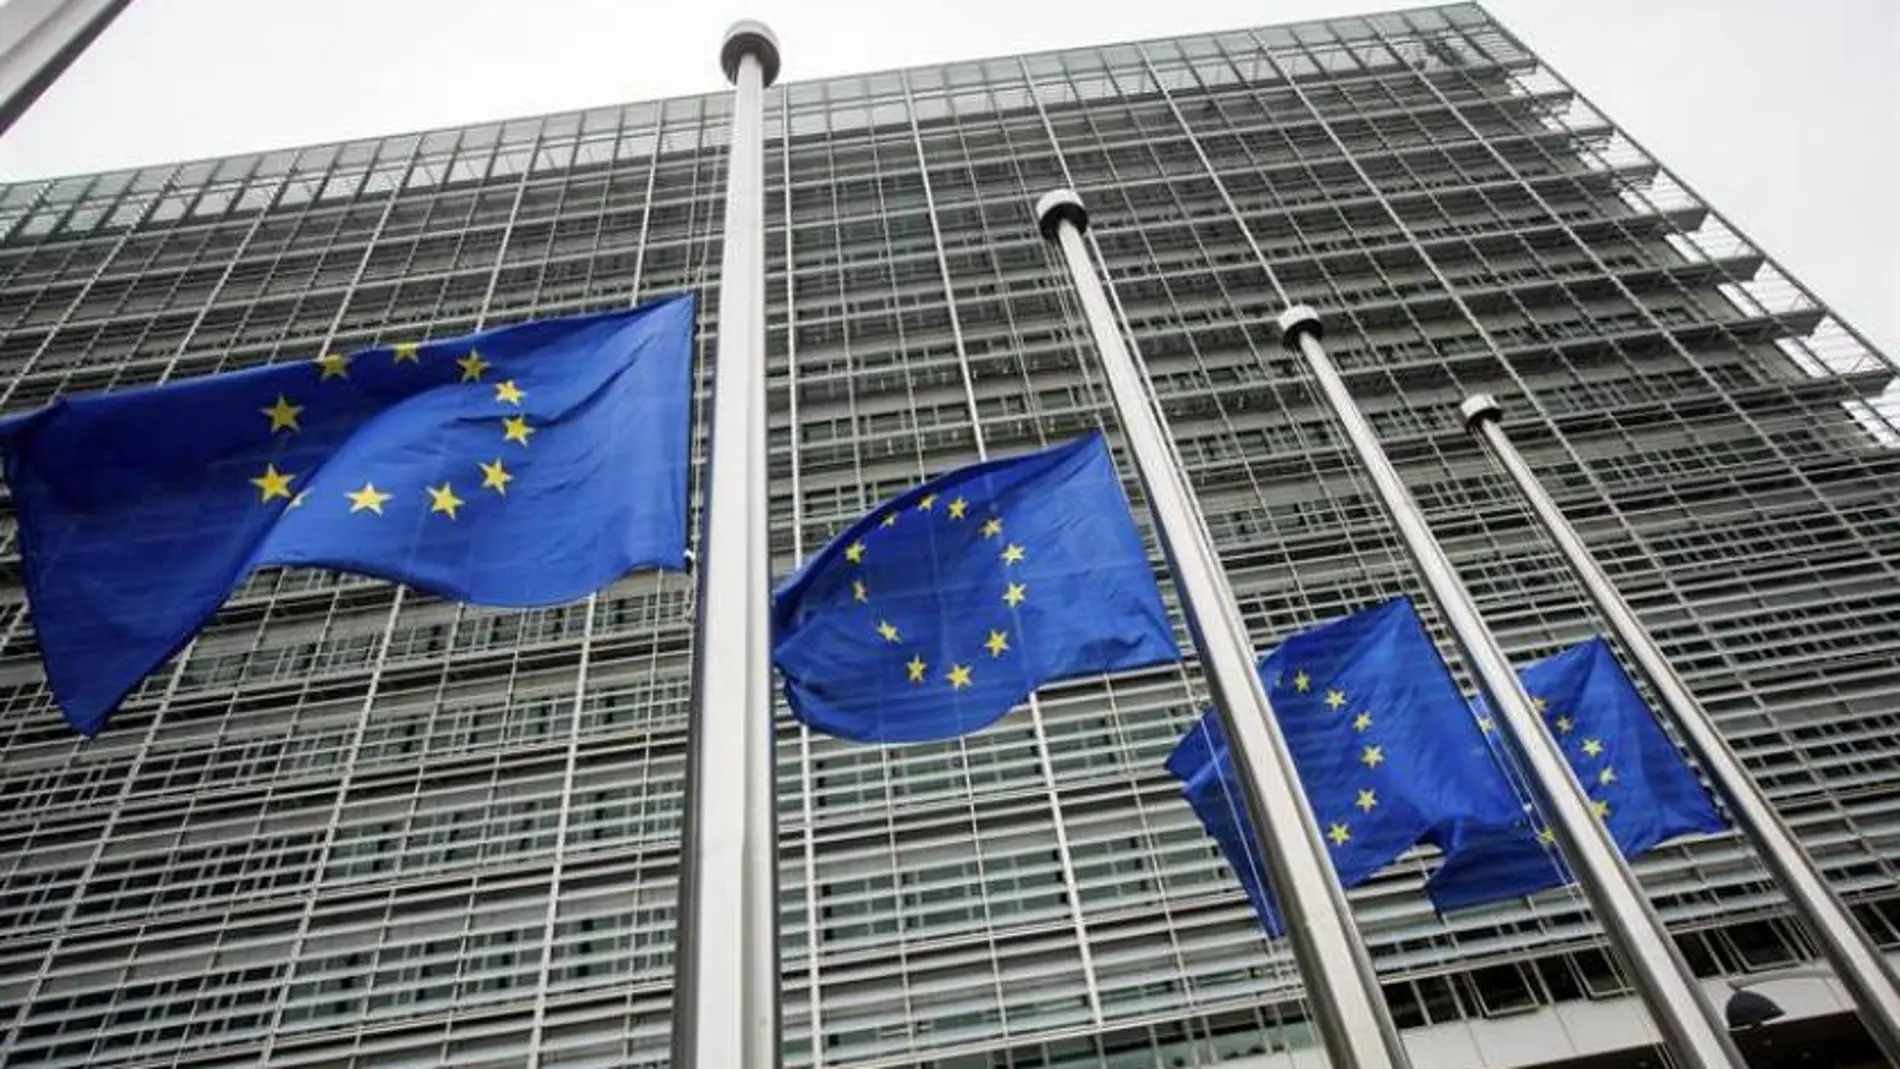 Banderas de la Unión Europea frente a la sede de la Comisión Europea